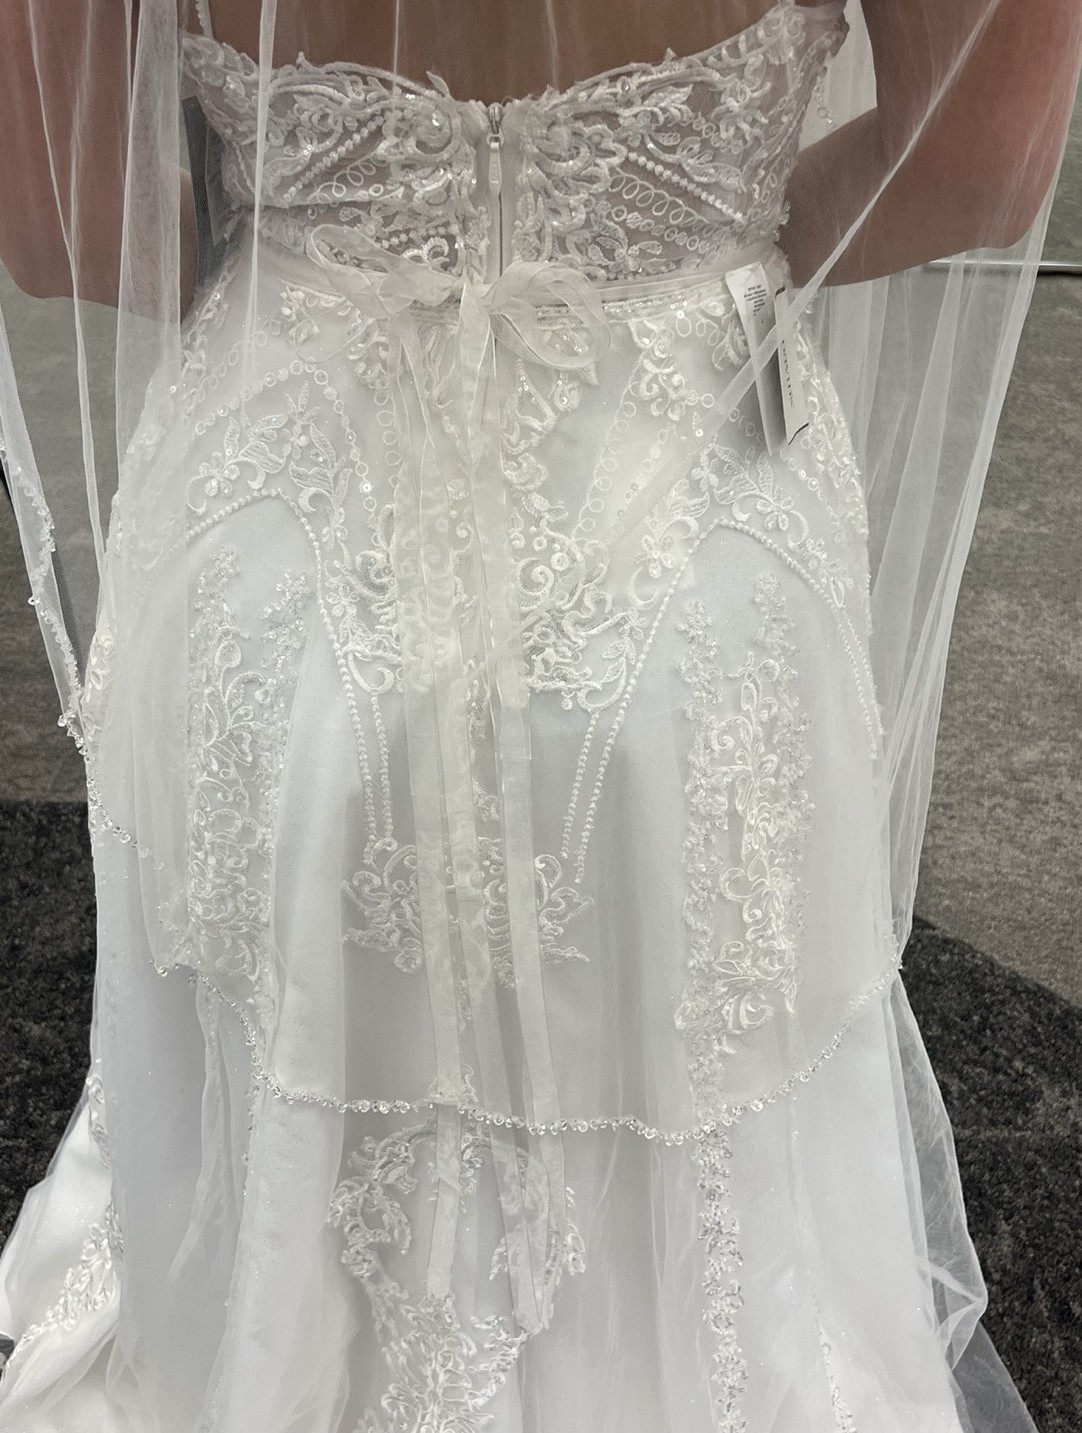 Lace Applique Tulle Spaghetti Strap Wedding Dress